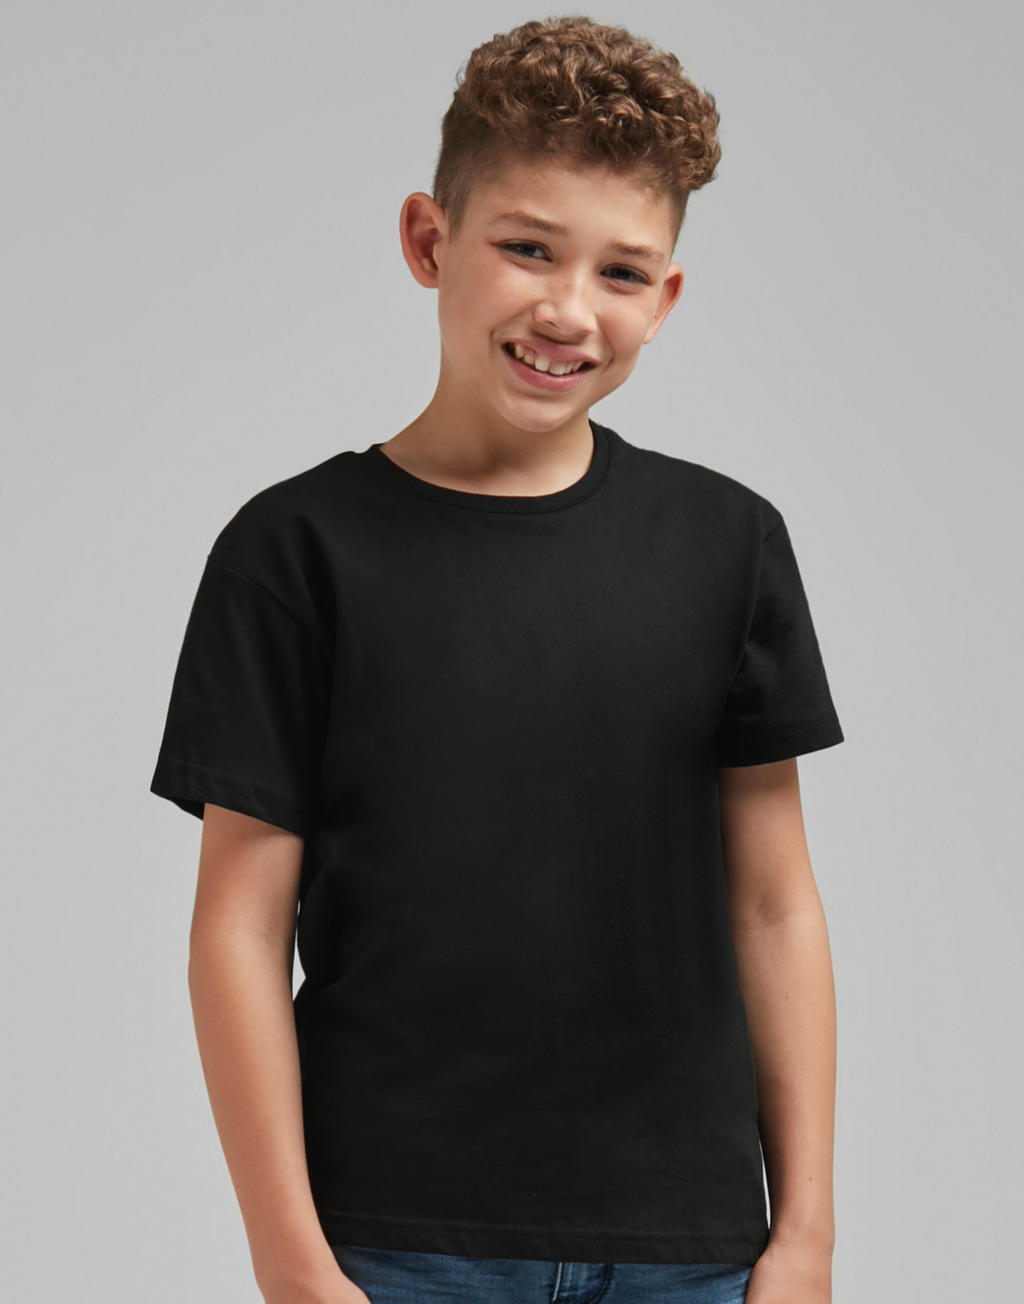 Dokonale potlačiteľné detské tričko bez štítku - white